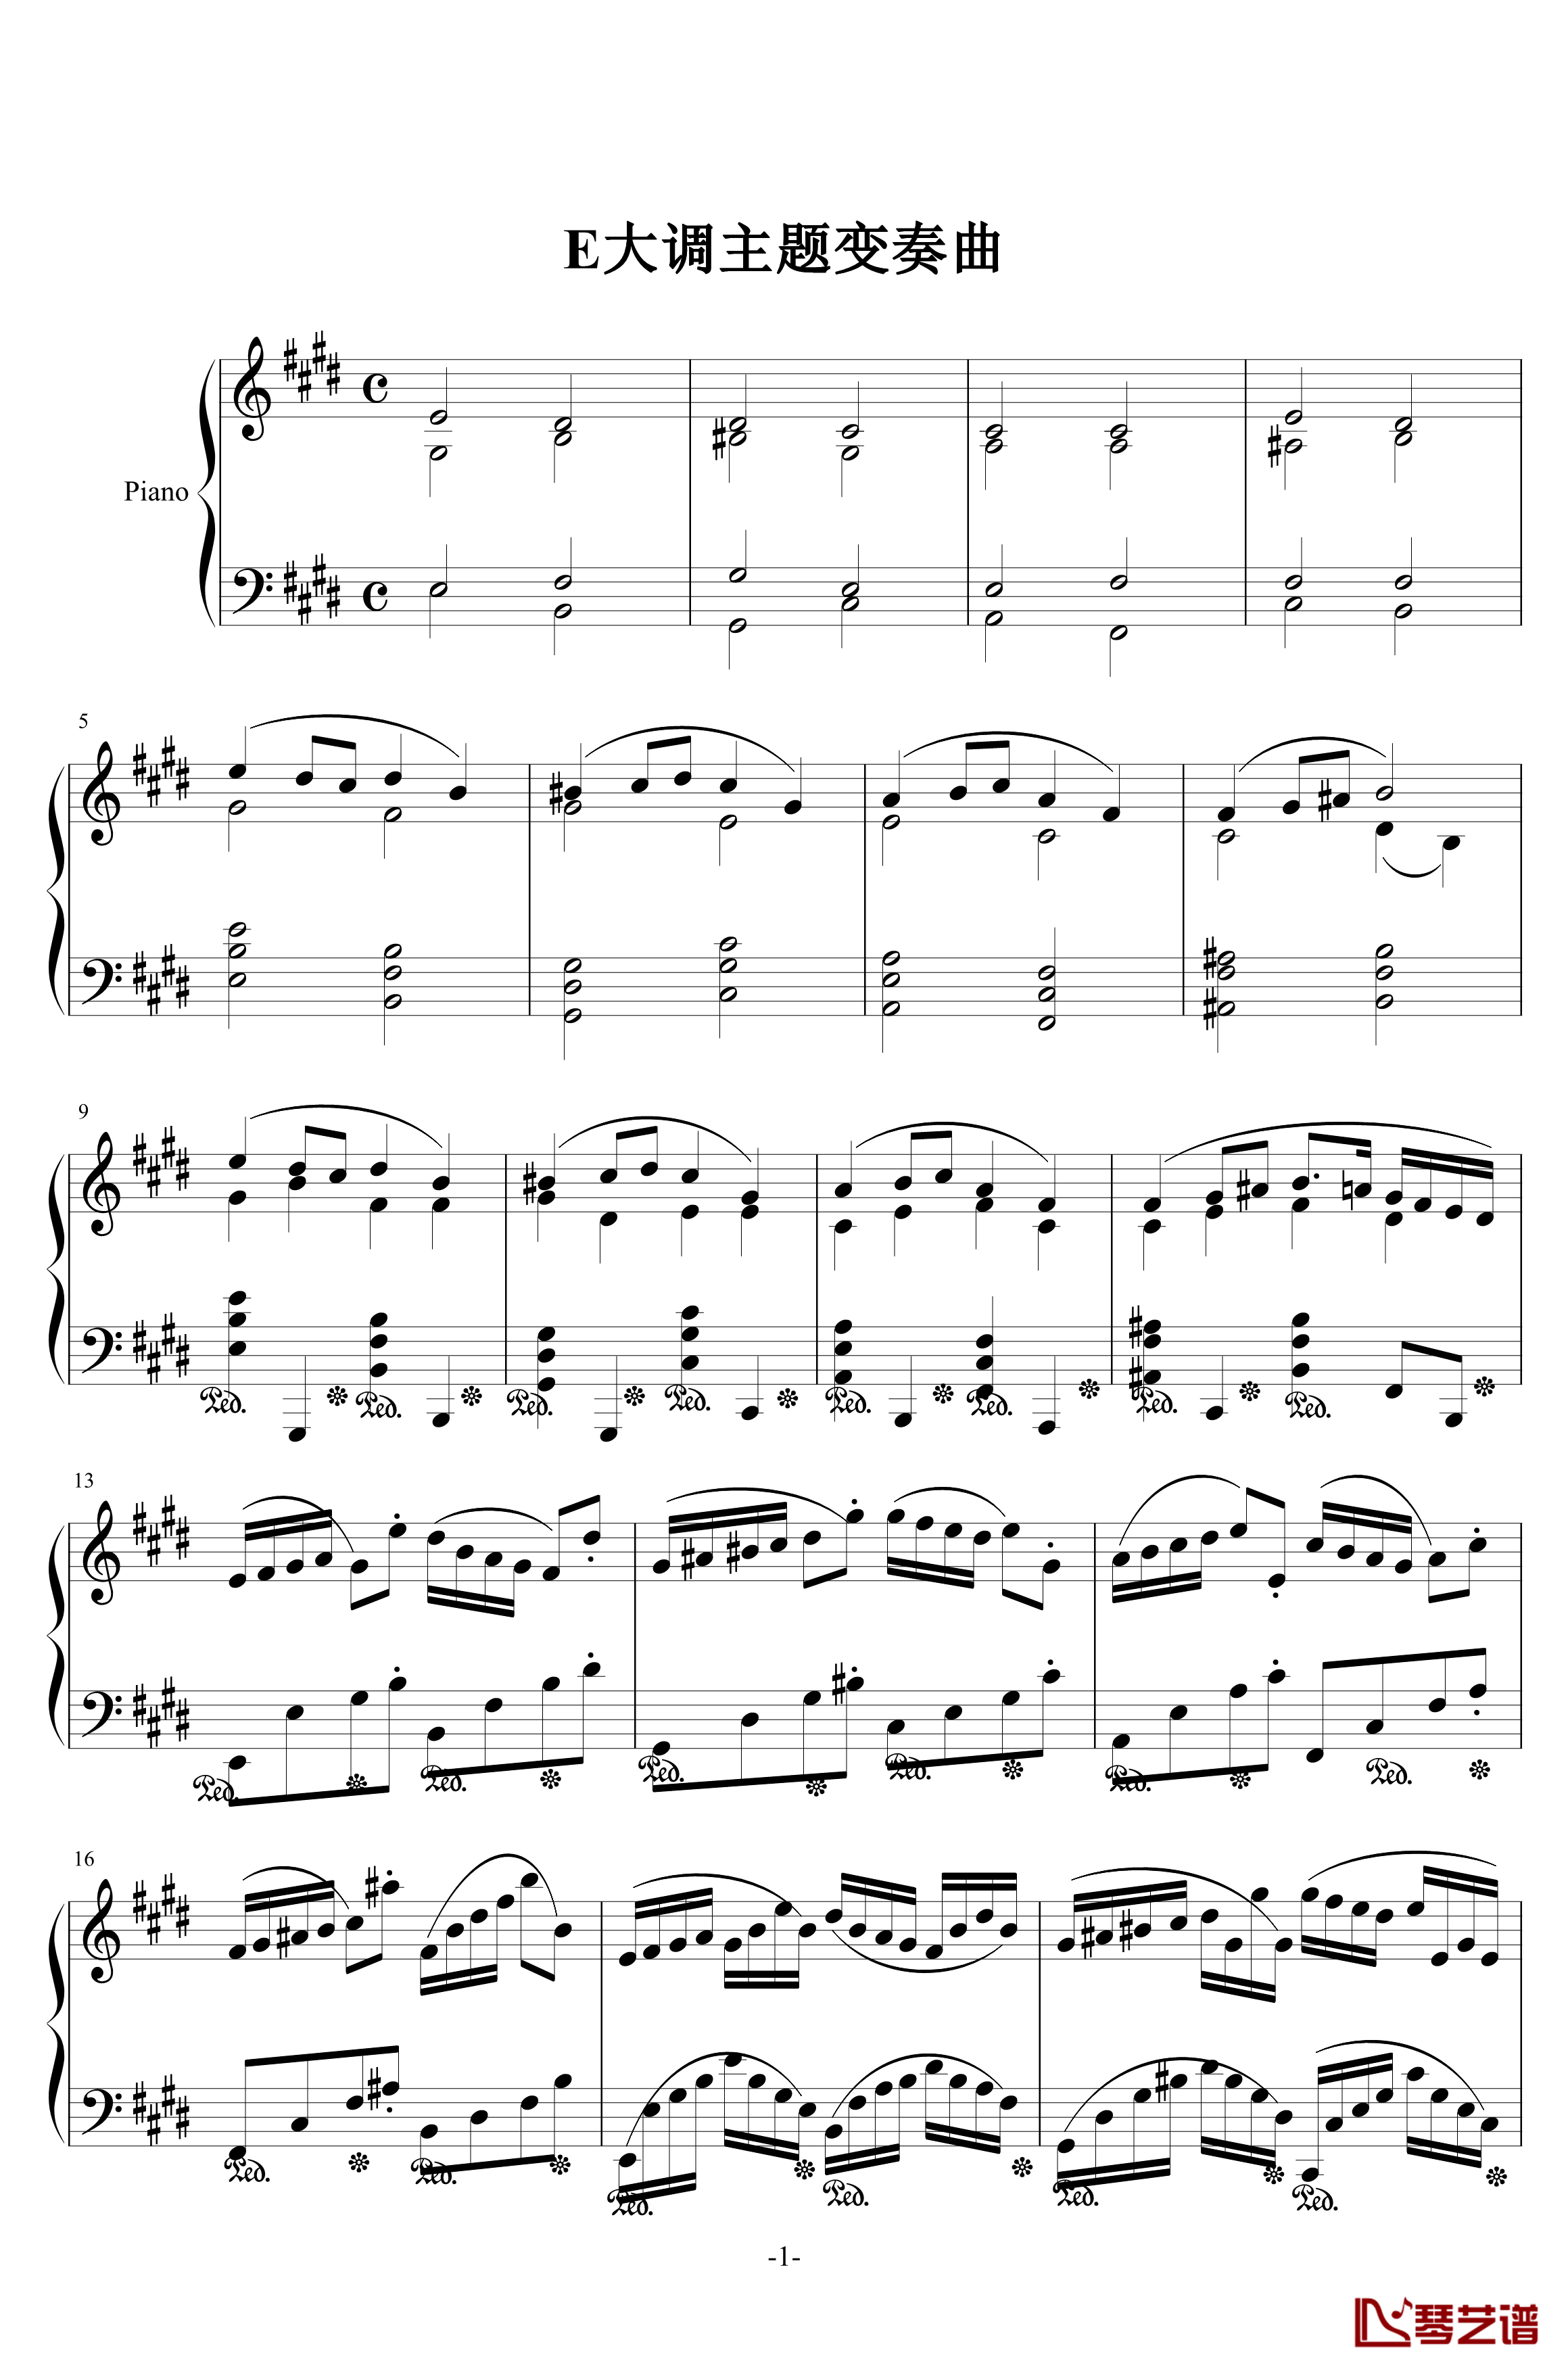 E大调主题变奏曲钢琴谱-H25-伊dên1